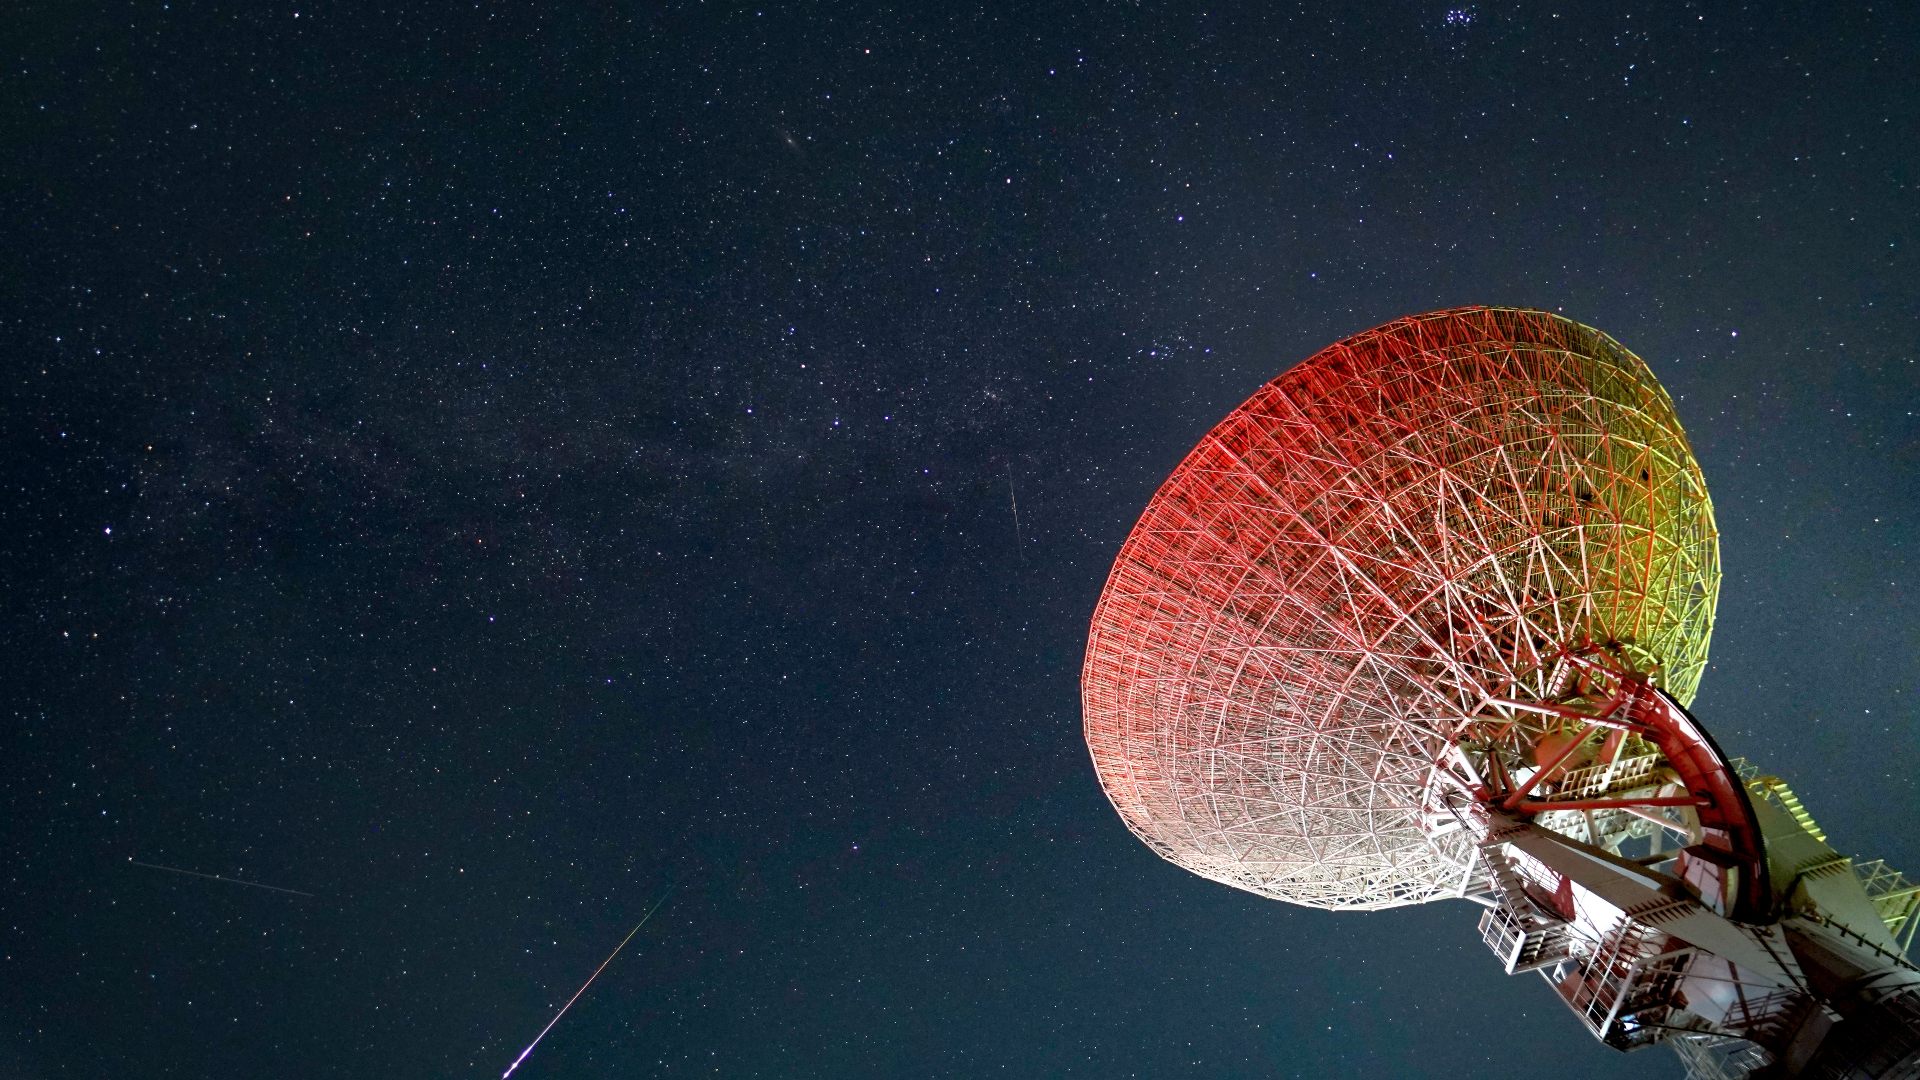 Des météores prussiens brillants traversent le ciel étoilé avec la grande parabole de télescope à droite de l'image.